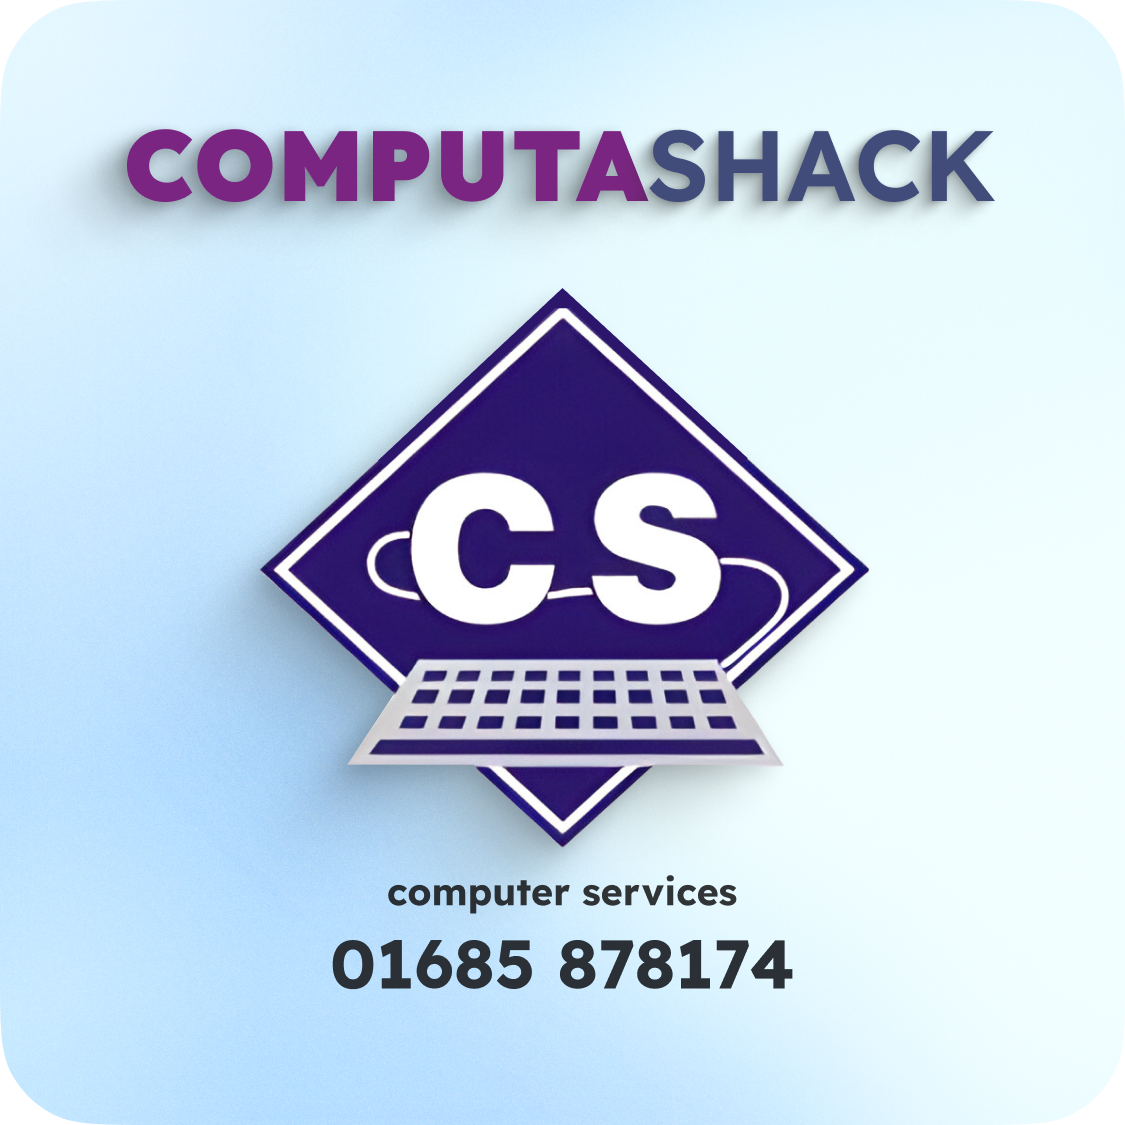 (c) Computashack.com